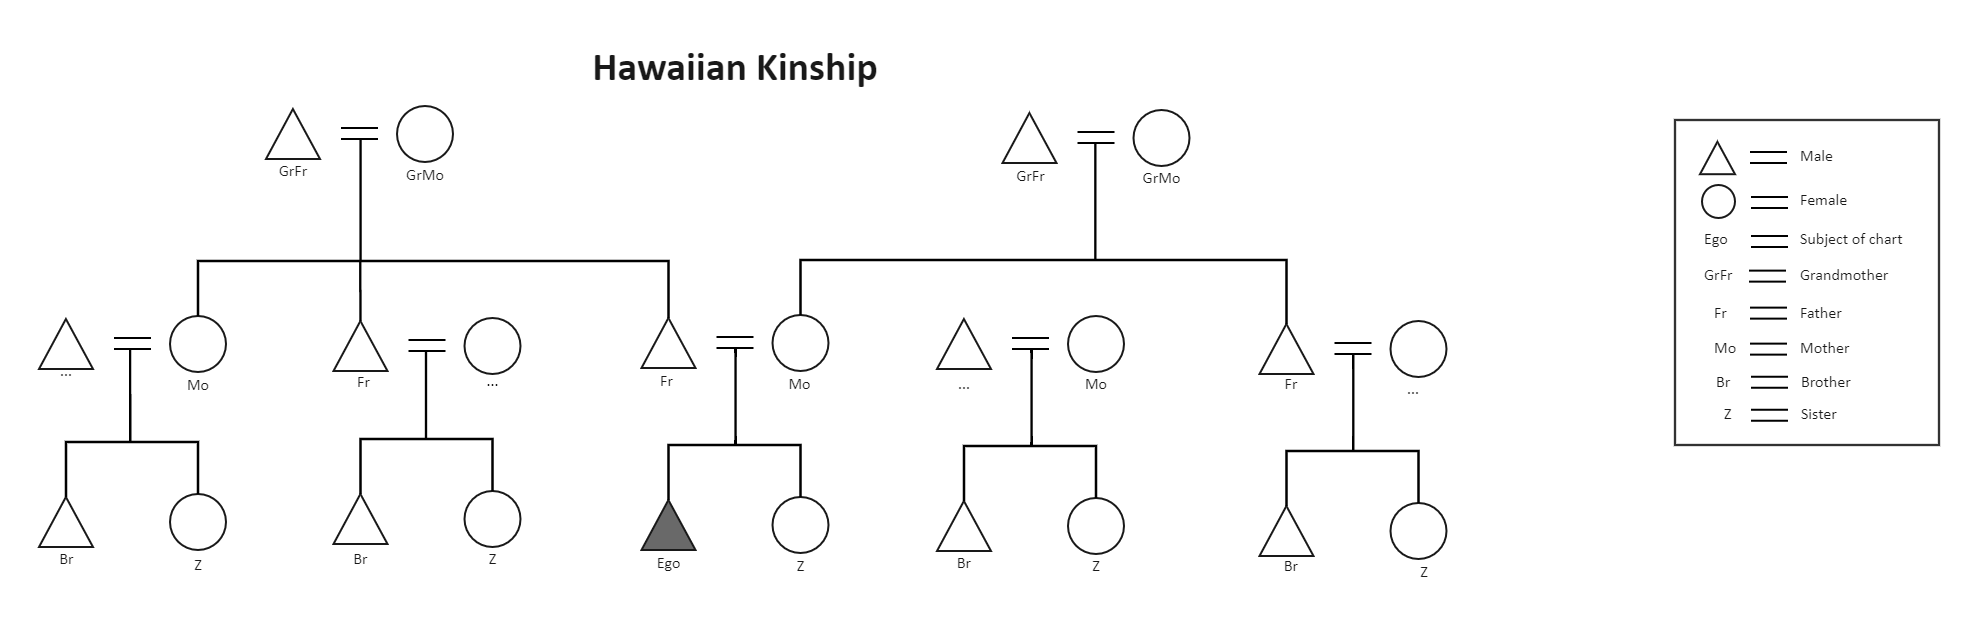 Hawaiian Kinship Chart